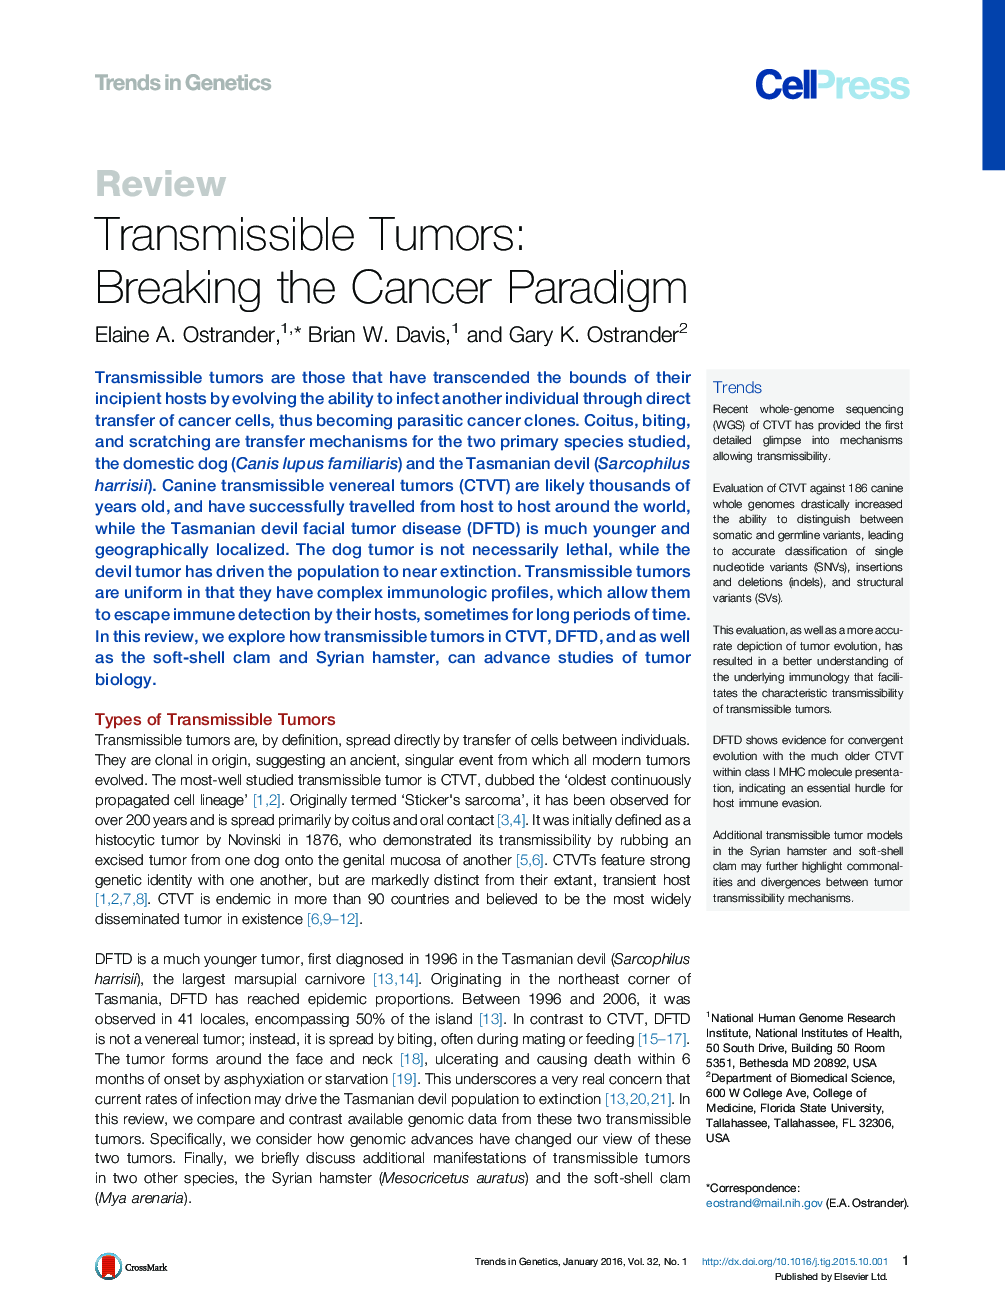 تومورهای قابل انتقال: شکستن پارادایم سرطان 